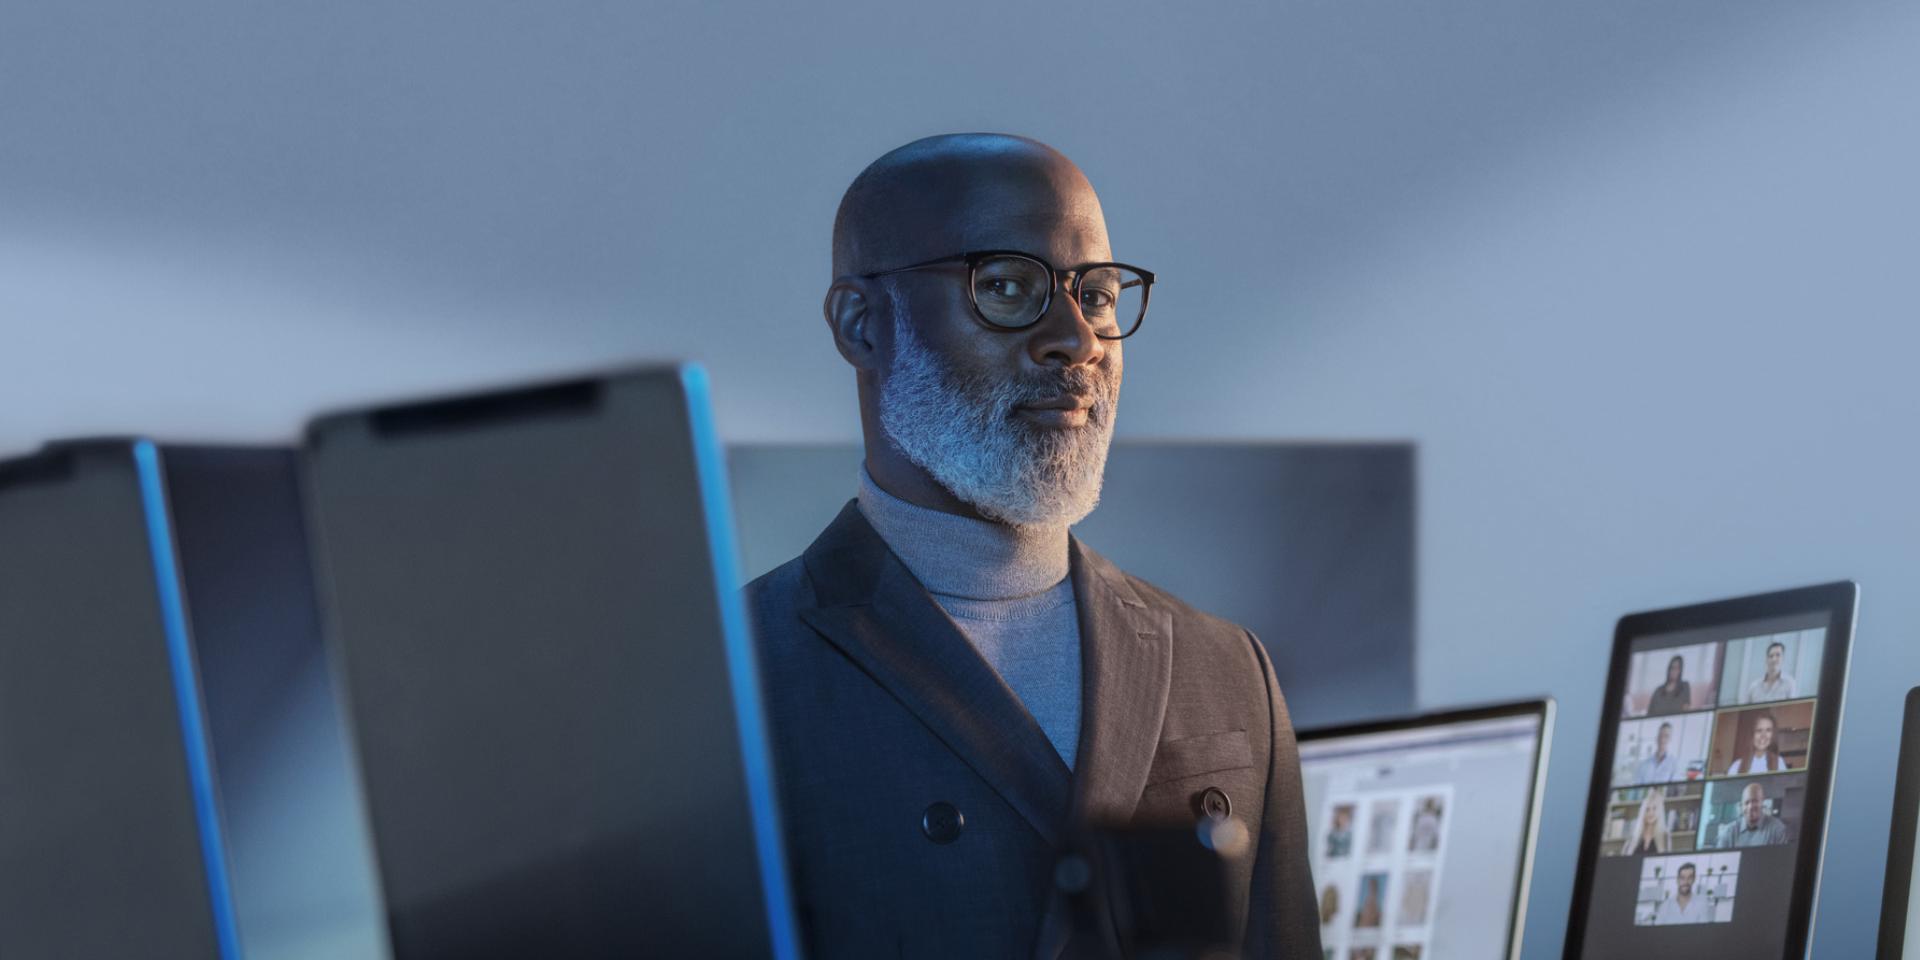 Lachende man omringd door digitale apparaten die een bril draagt met ZEISS BlueGuard voor bescherming tegen blauw licht.